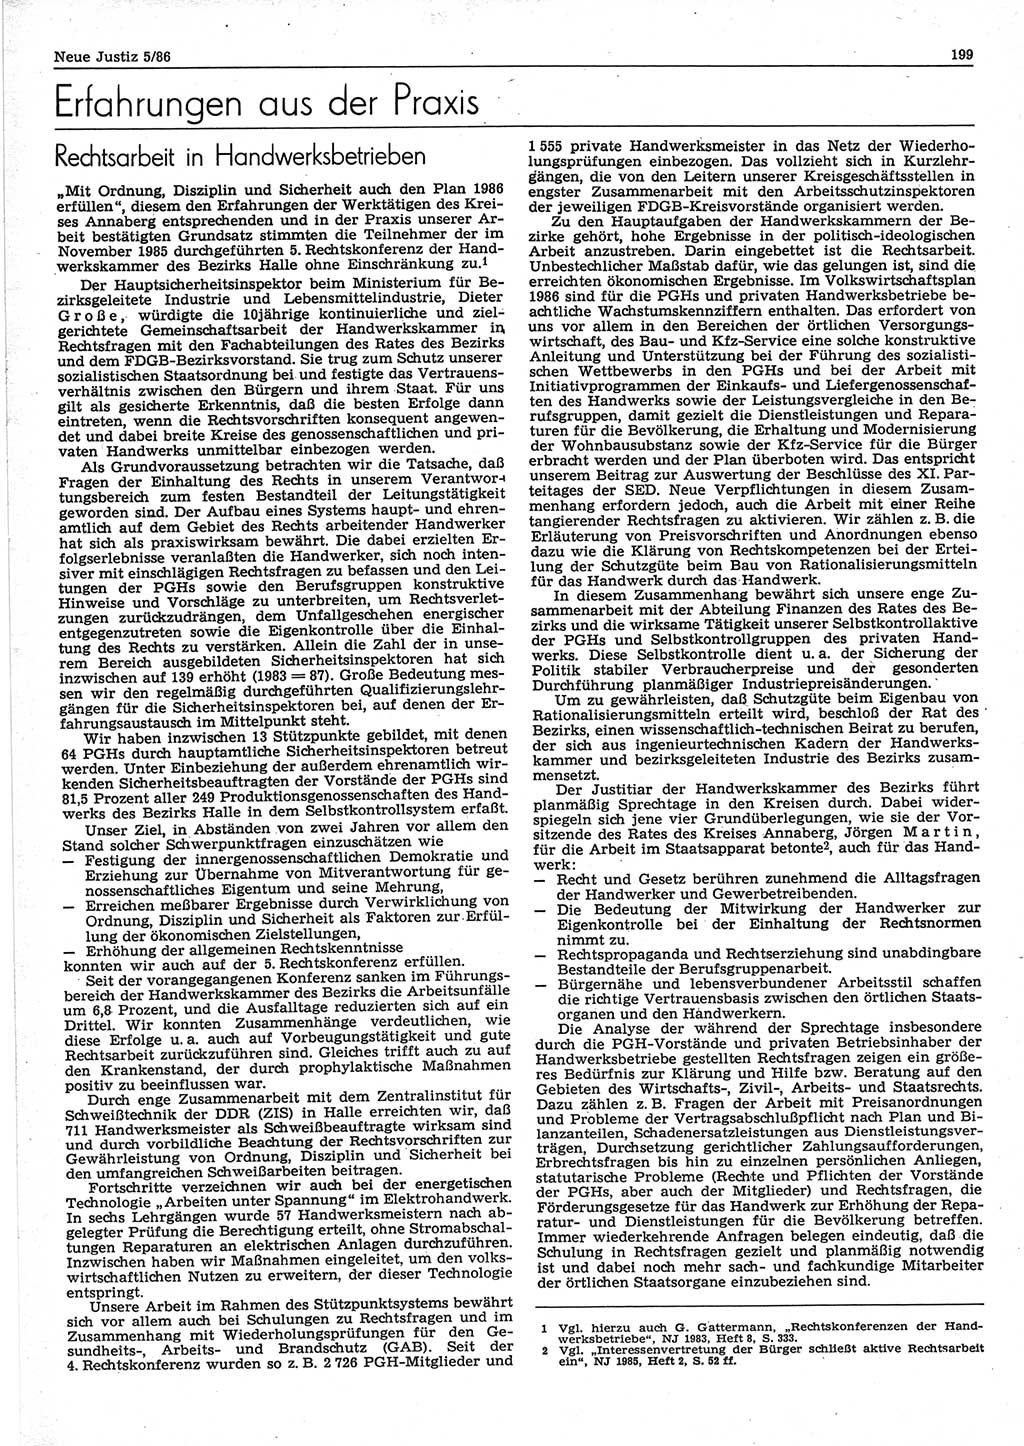 Neue Justiz (NJ), Zeitschrift für sozialistisches Recht und Gesetzlichkeit [Deutsche Demokratische Republik (DDR)], 40. Jahrgang 1986, Seite 199 (NJ DDR 1986, S. 199)